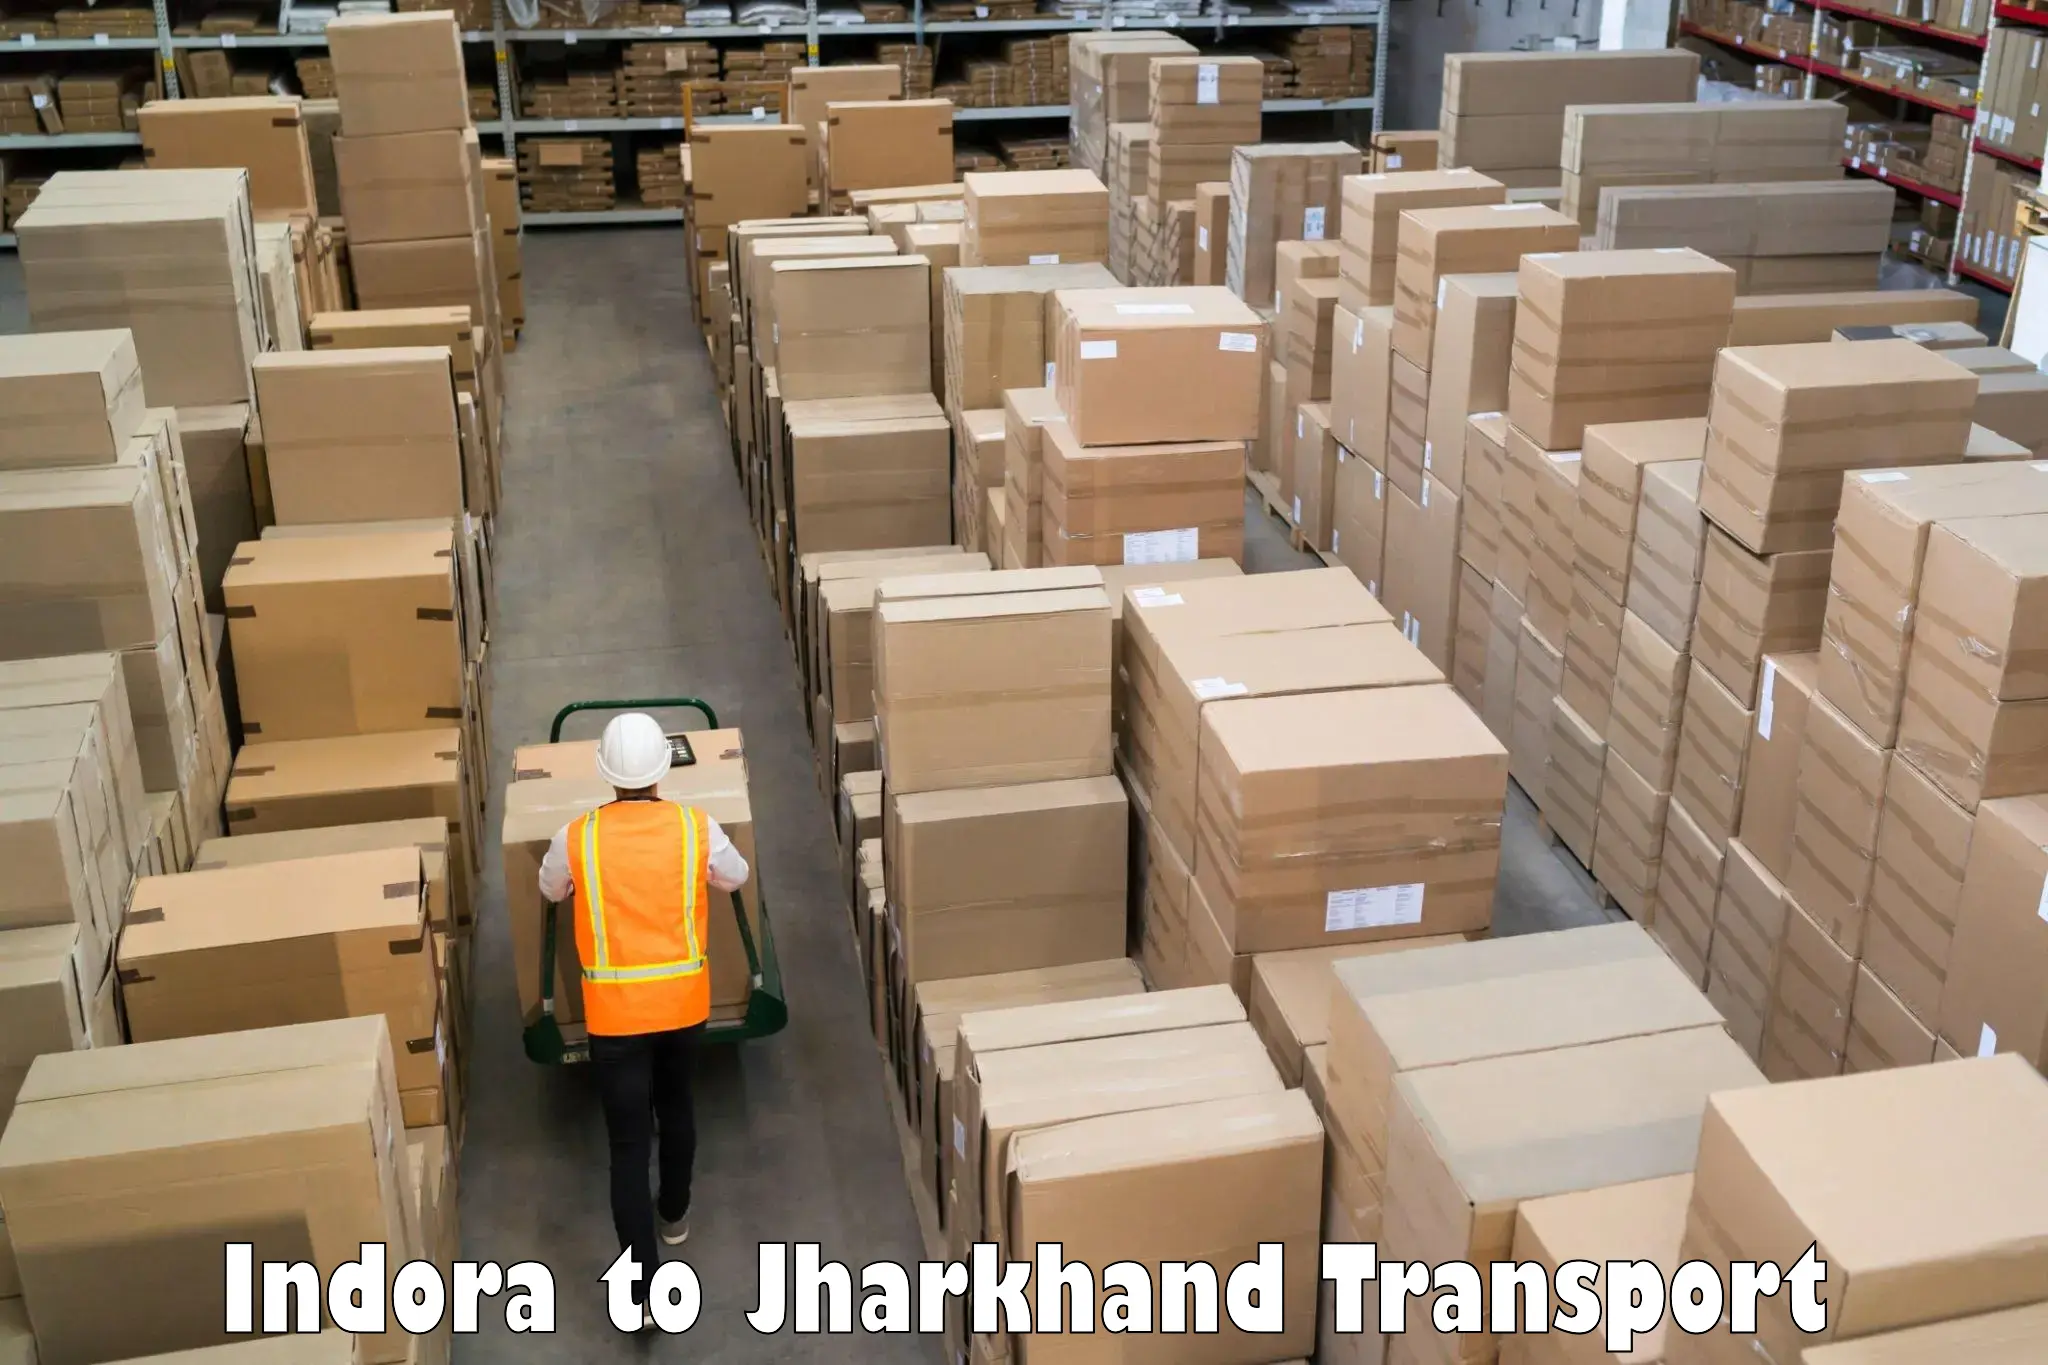 Transport shared services in Indora to Medininagar